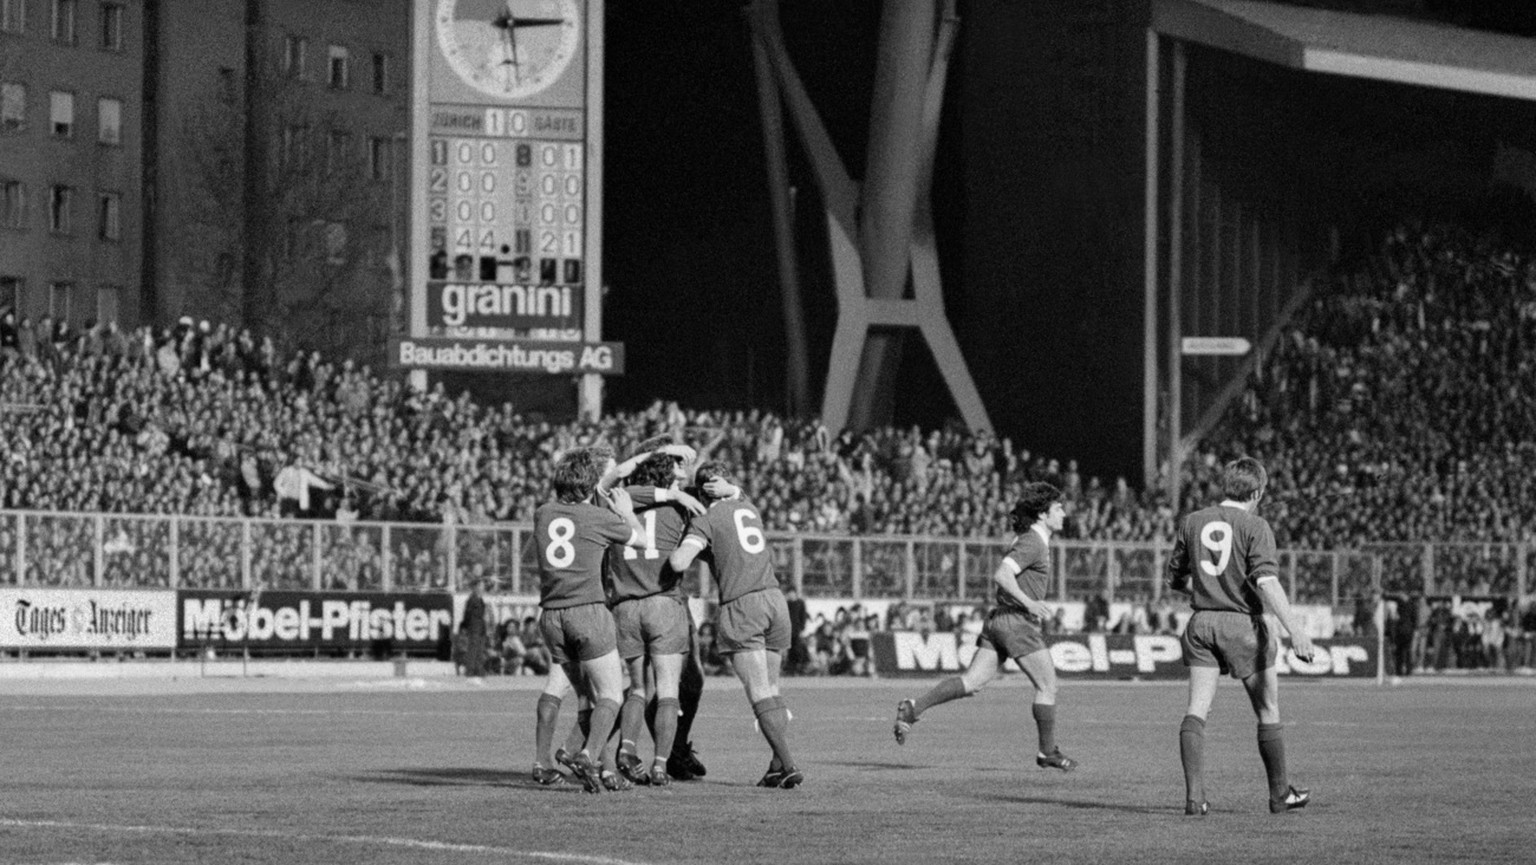 Jubel der Liverpool-Spieler nach dem Ausgleich zum 1:1 durch Neal im Europacup Halbfinal FC Zuerich gegen Liverpool vom 6. April 1977 auf dem Letzigrund. Der FCZ verlor das Spiel mit 1:3. (KEYSTONE/St ...